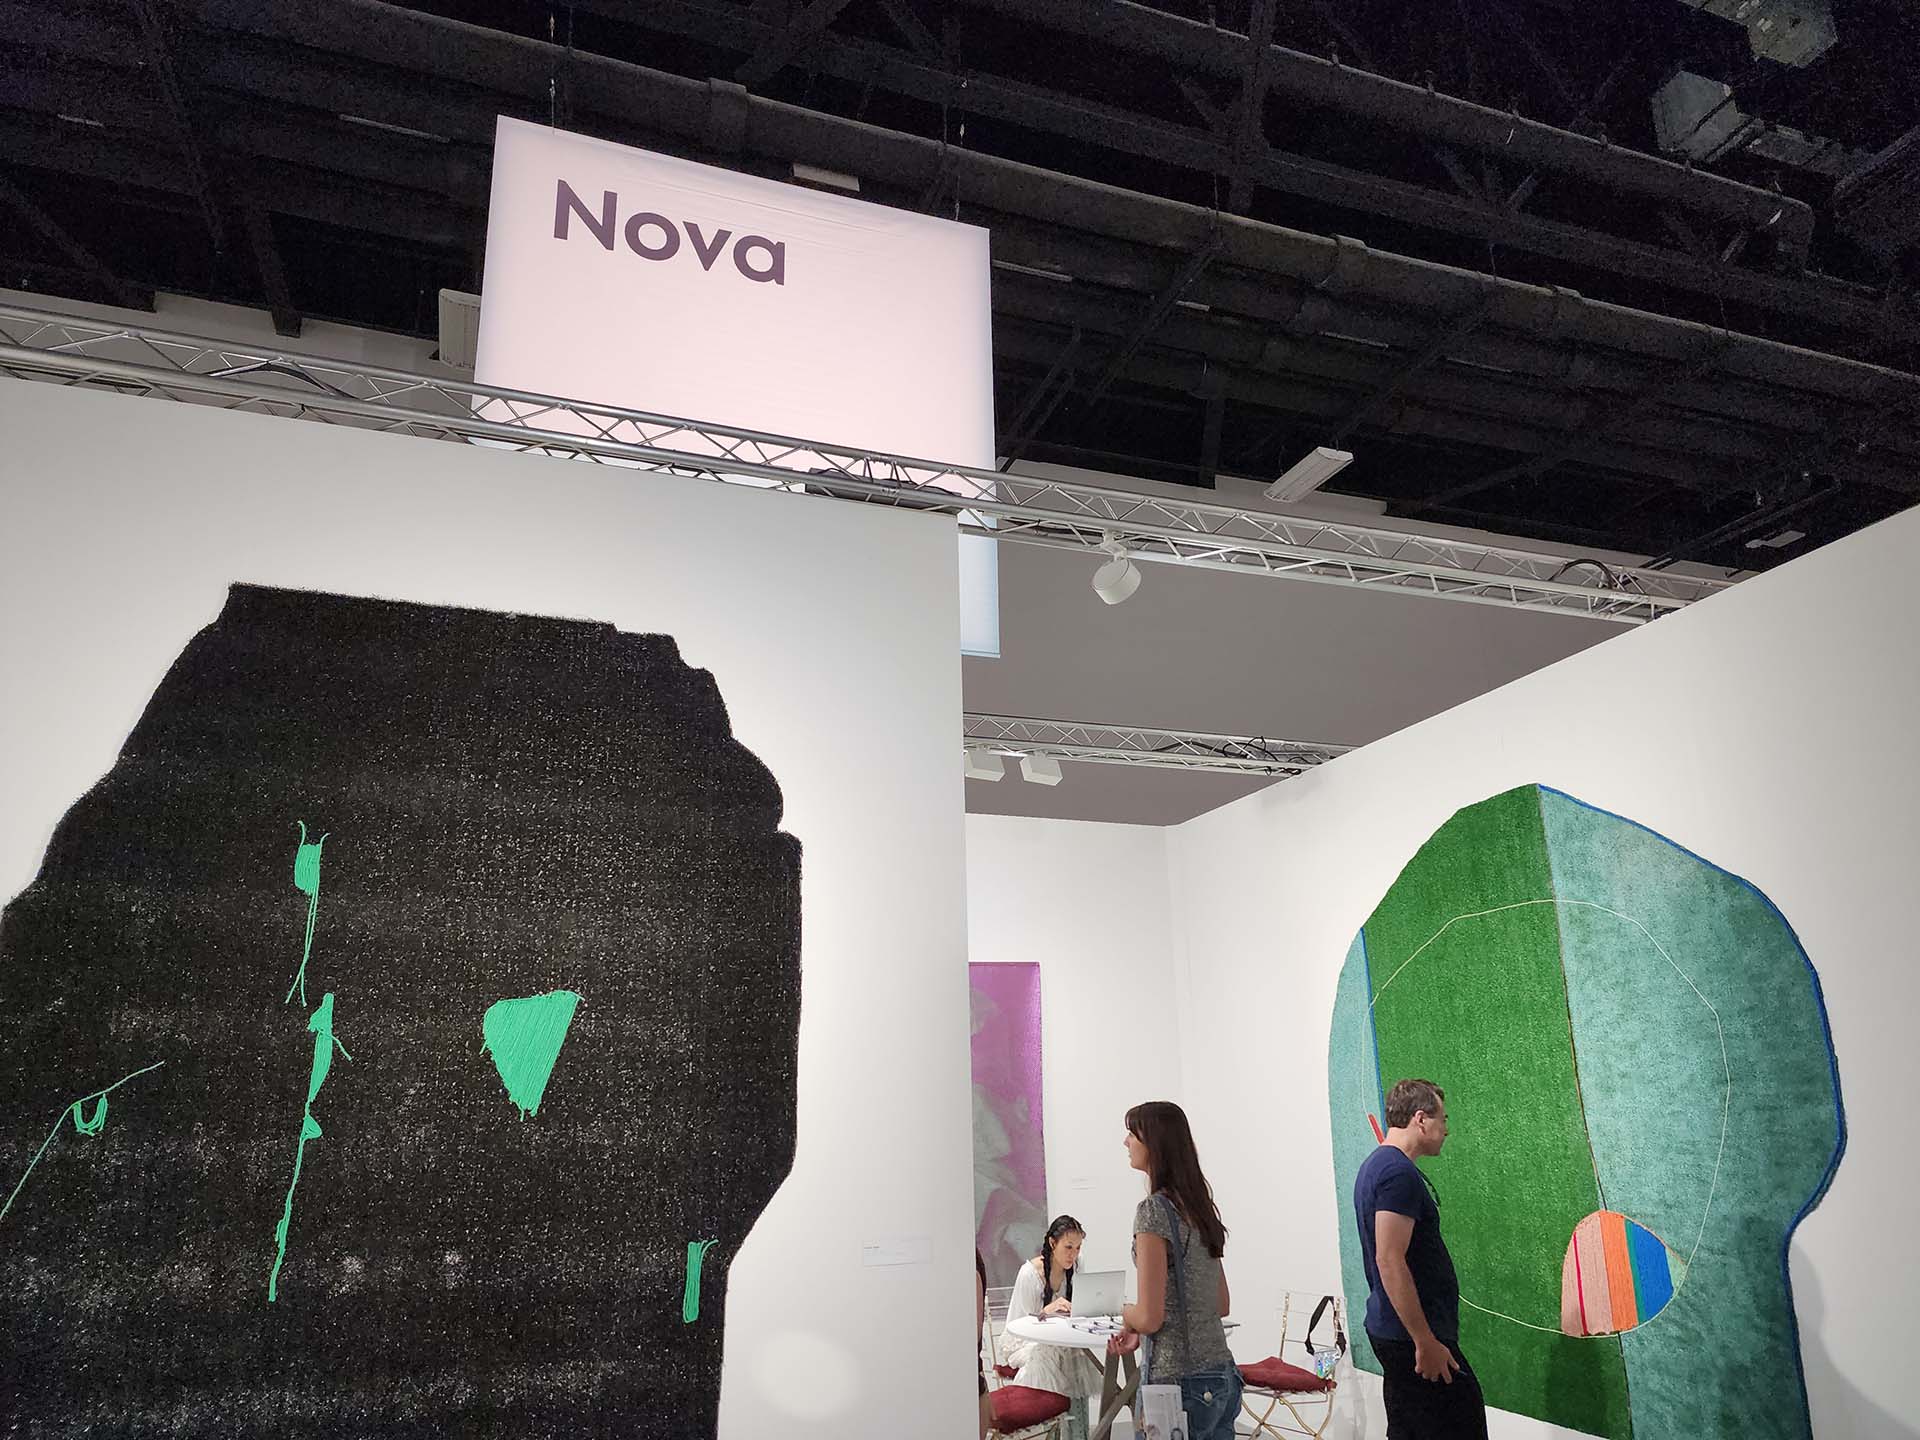 Nova es el sector que concentra las novedades de Art Basel Miami Beach. (@nachomartinfilms)